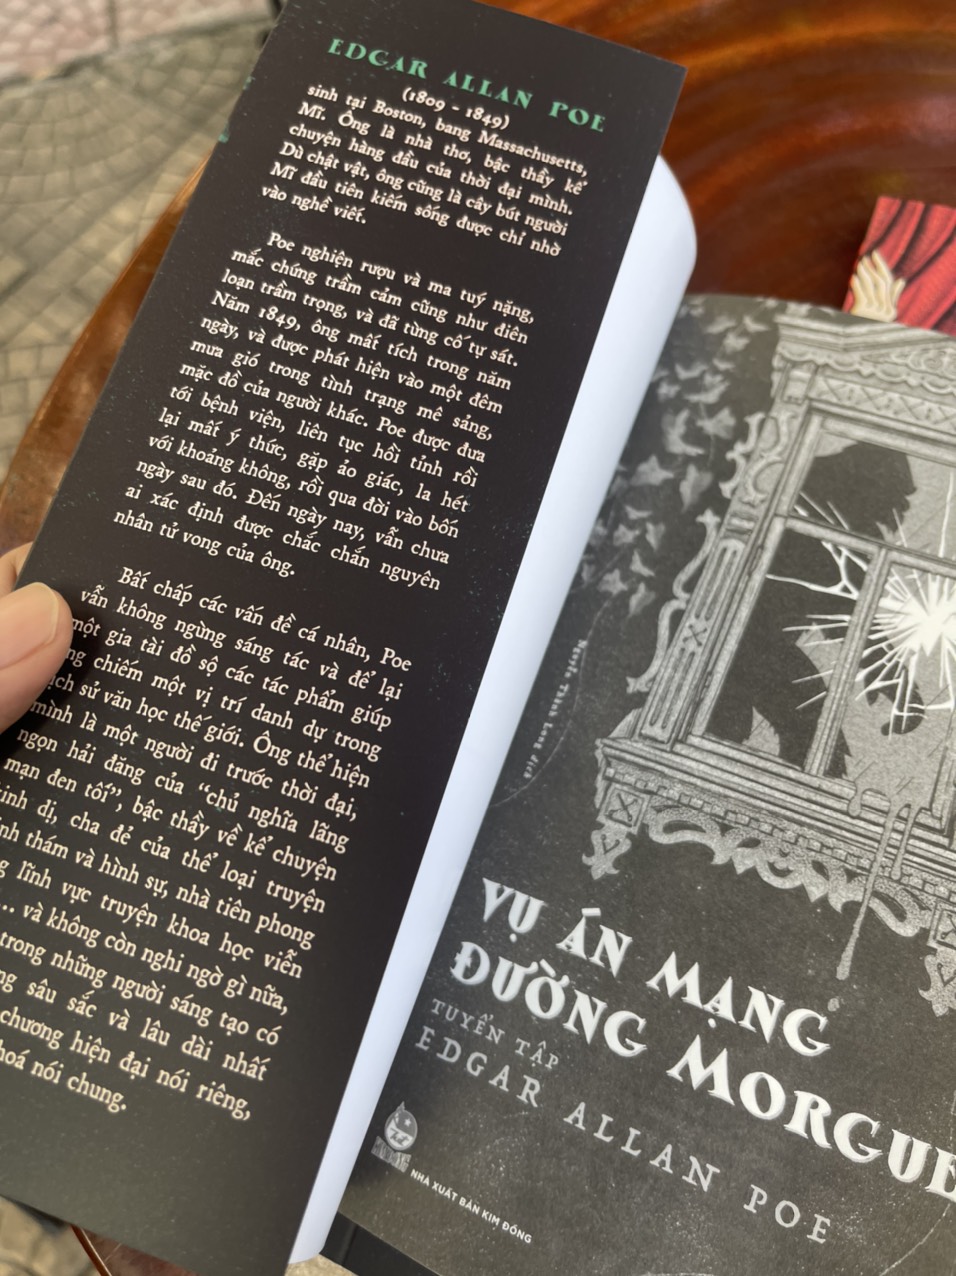 [LOẠT SÁCH KINH ĐIỂN MỚI] [Combo 3c Tuyển tập Edgar Allan Poe + Sheridan Le Fanu ] CON MÈO ĐEN - VỤ ÁN MẠNG ĐƯỜNG MORGUE – CARMILLA (tặng postcard) – Wingsbooks - NXb Kim Đồng